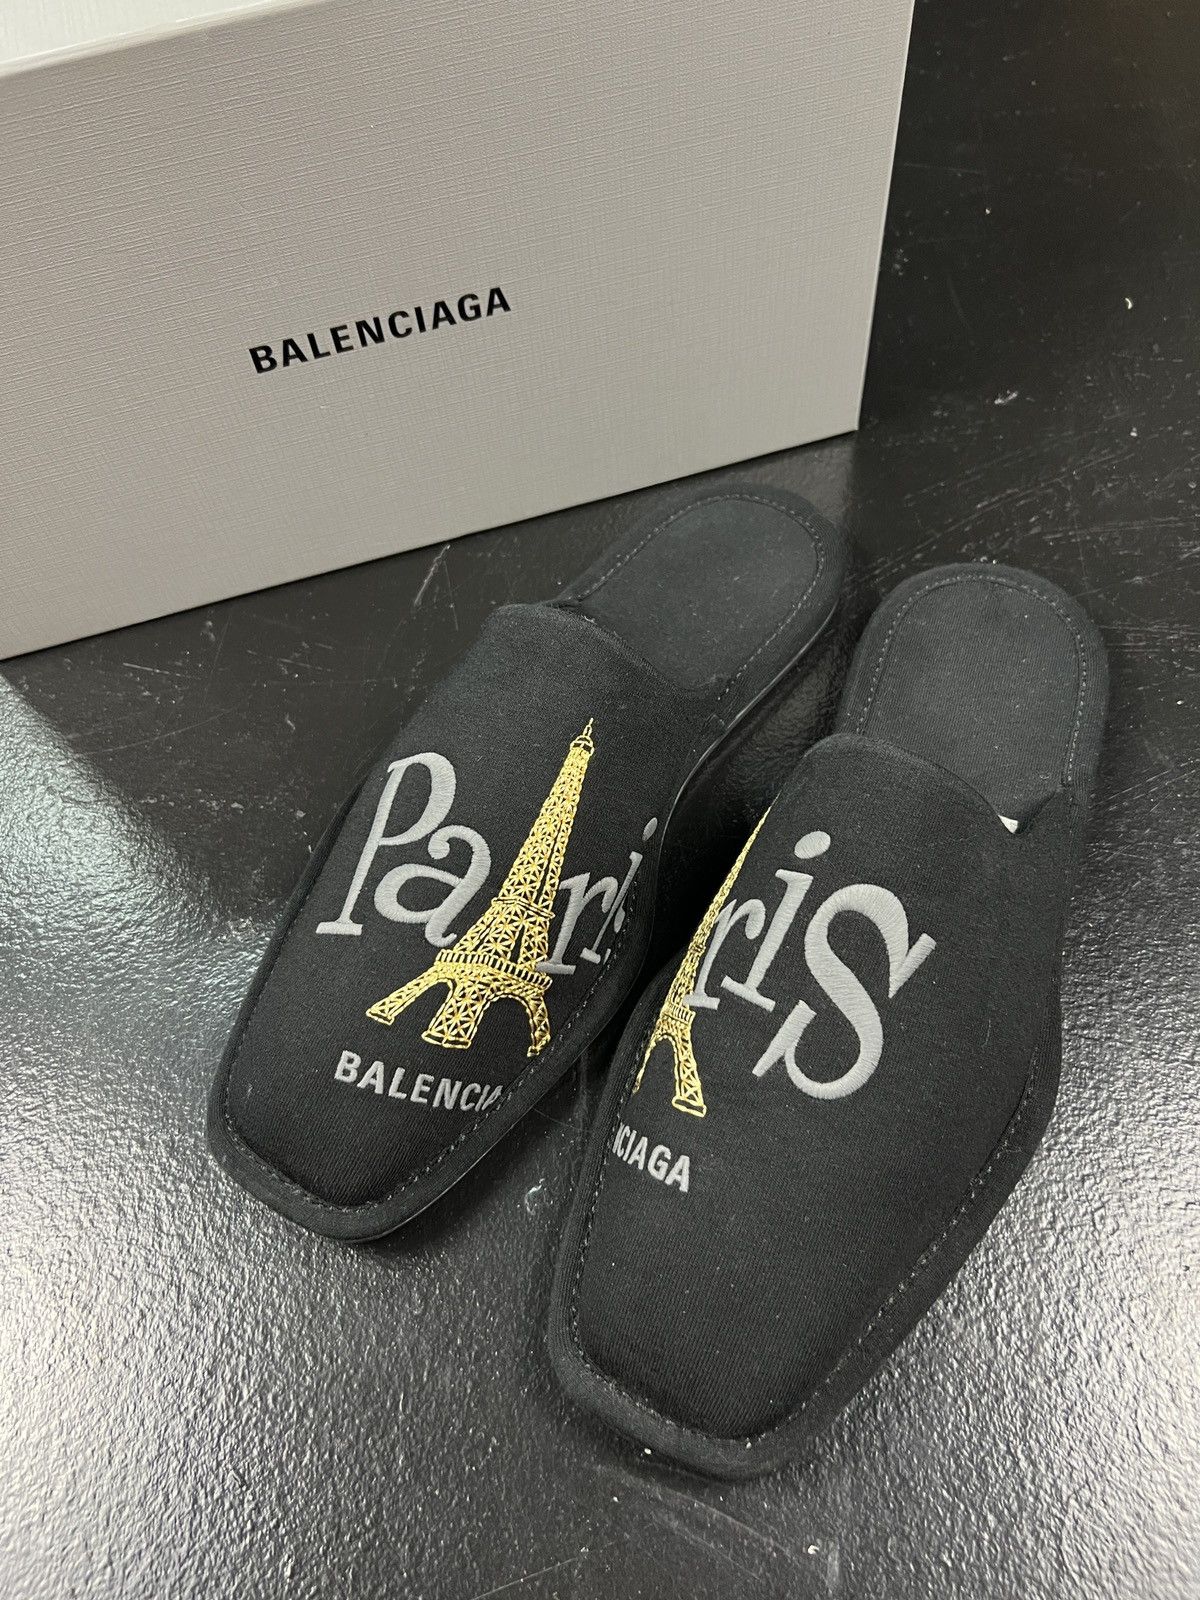 Balenciaga Balenciaga Slippers | Grailed